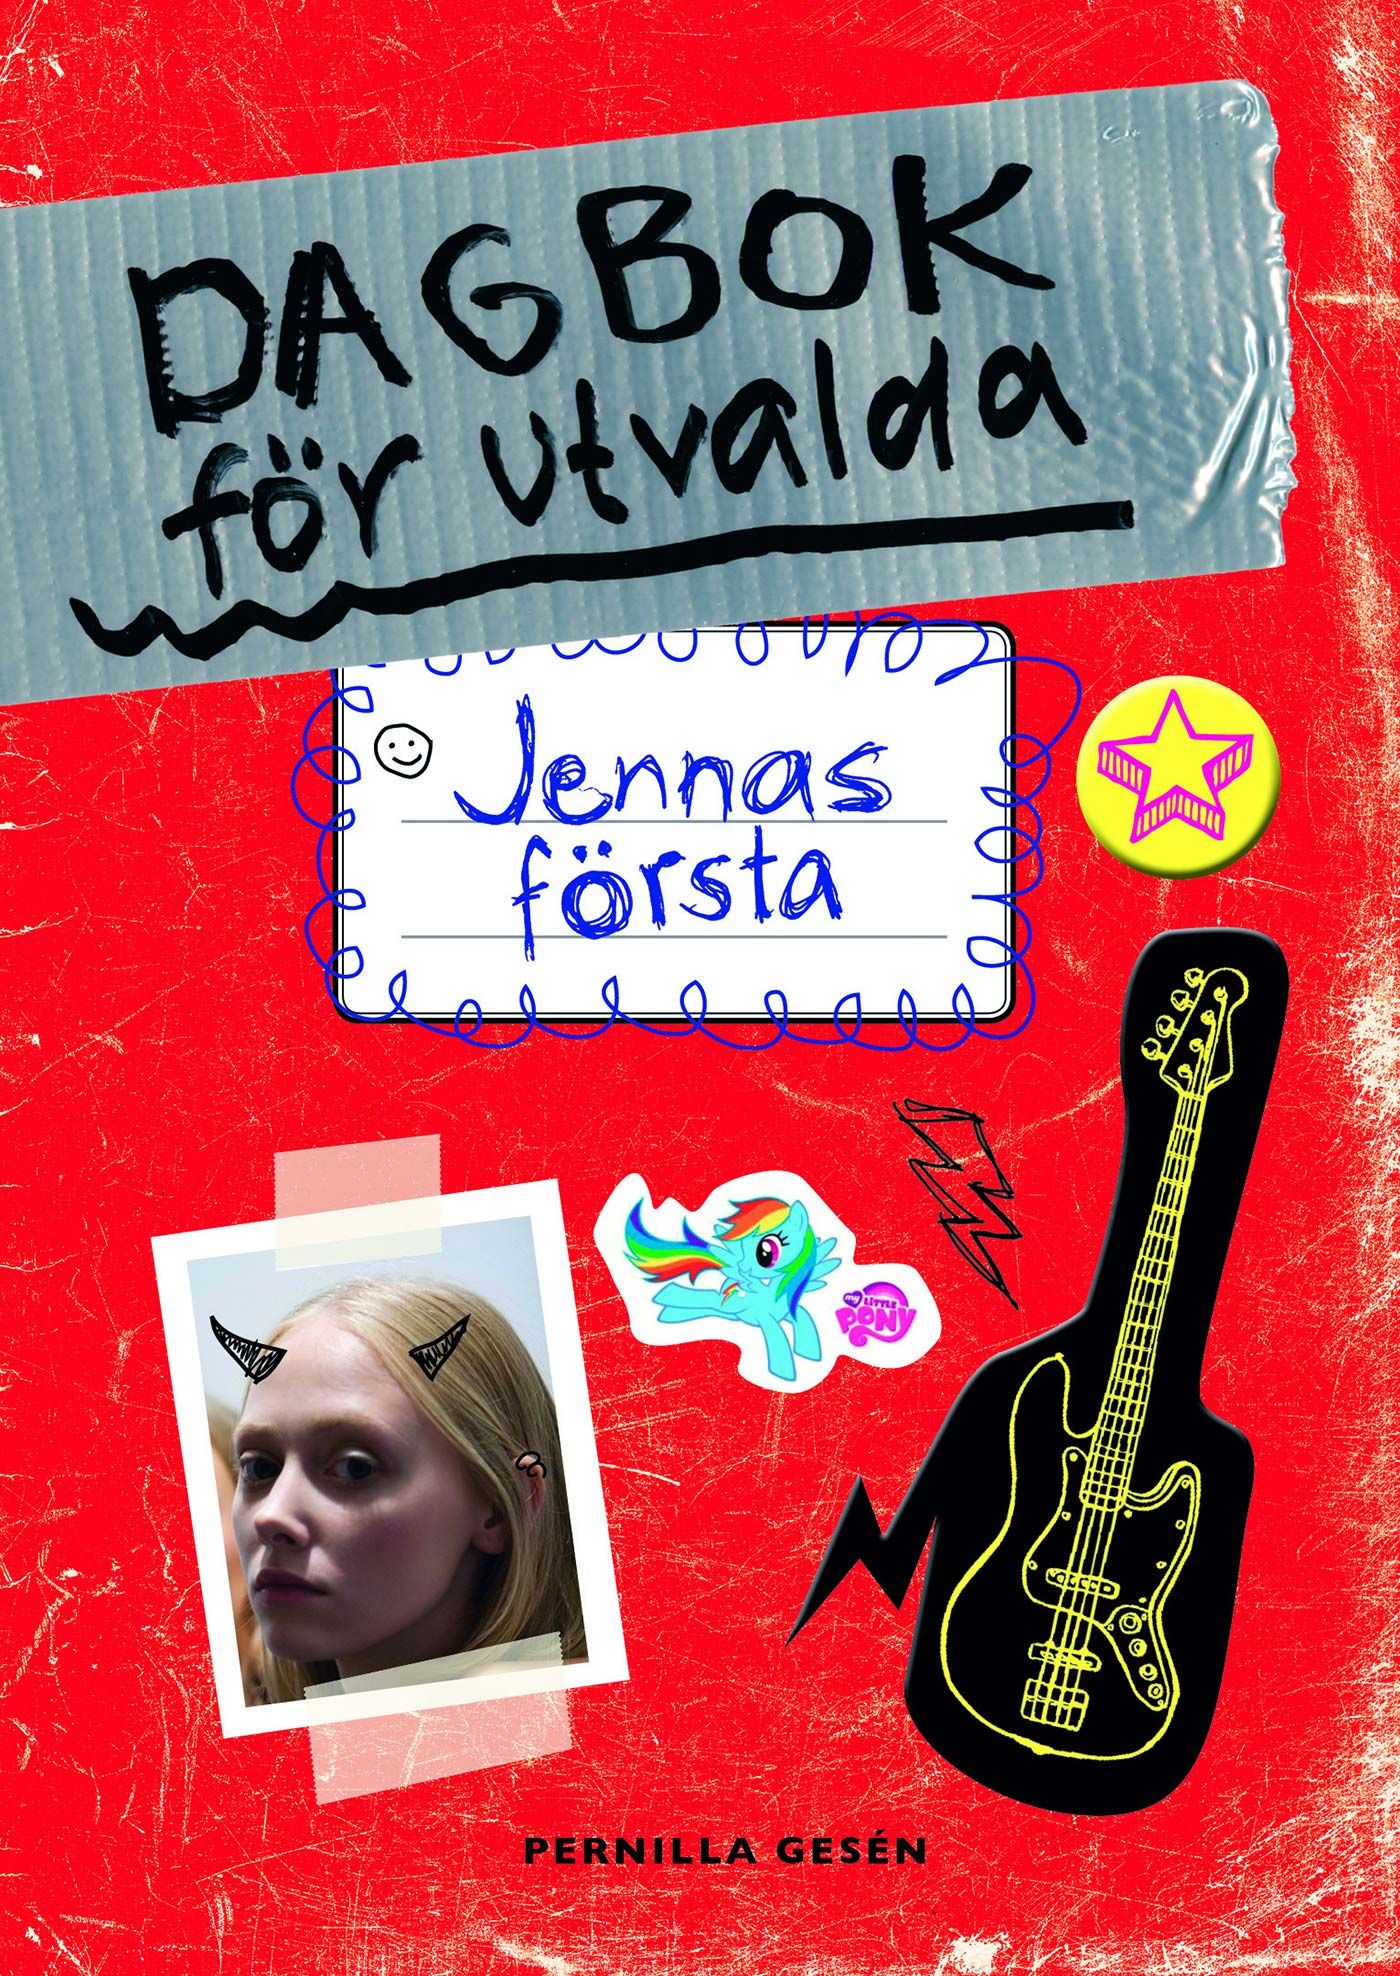 Dagbok för utvalda 1 - Jennas första, e-bog af Pernilla Gesén